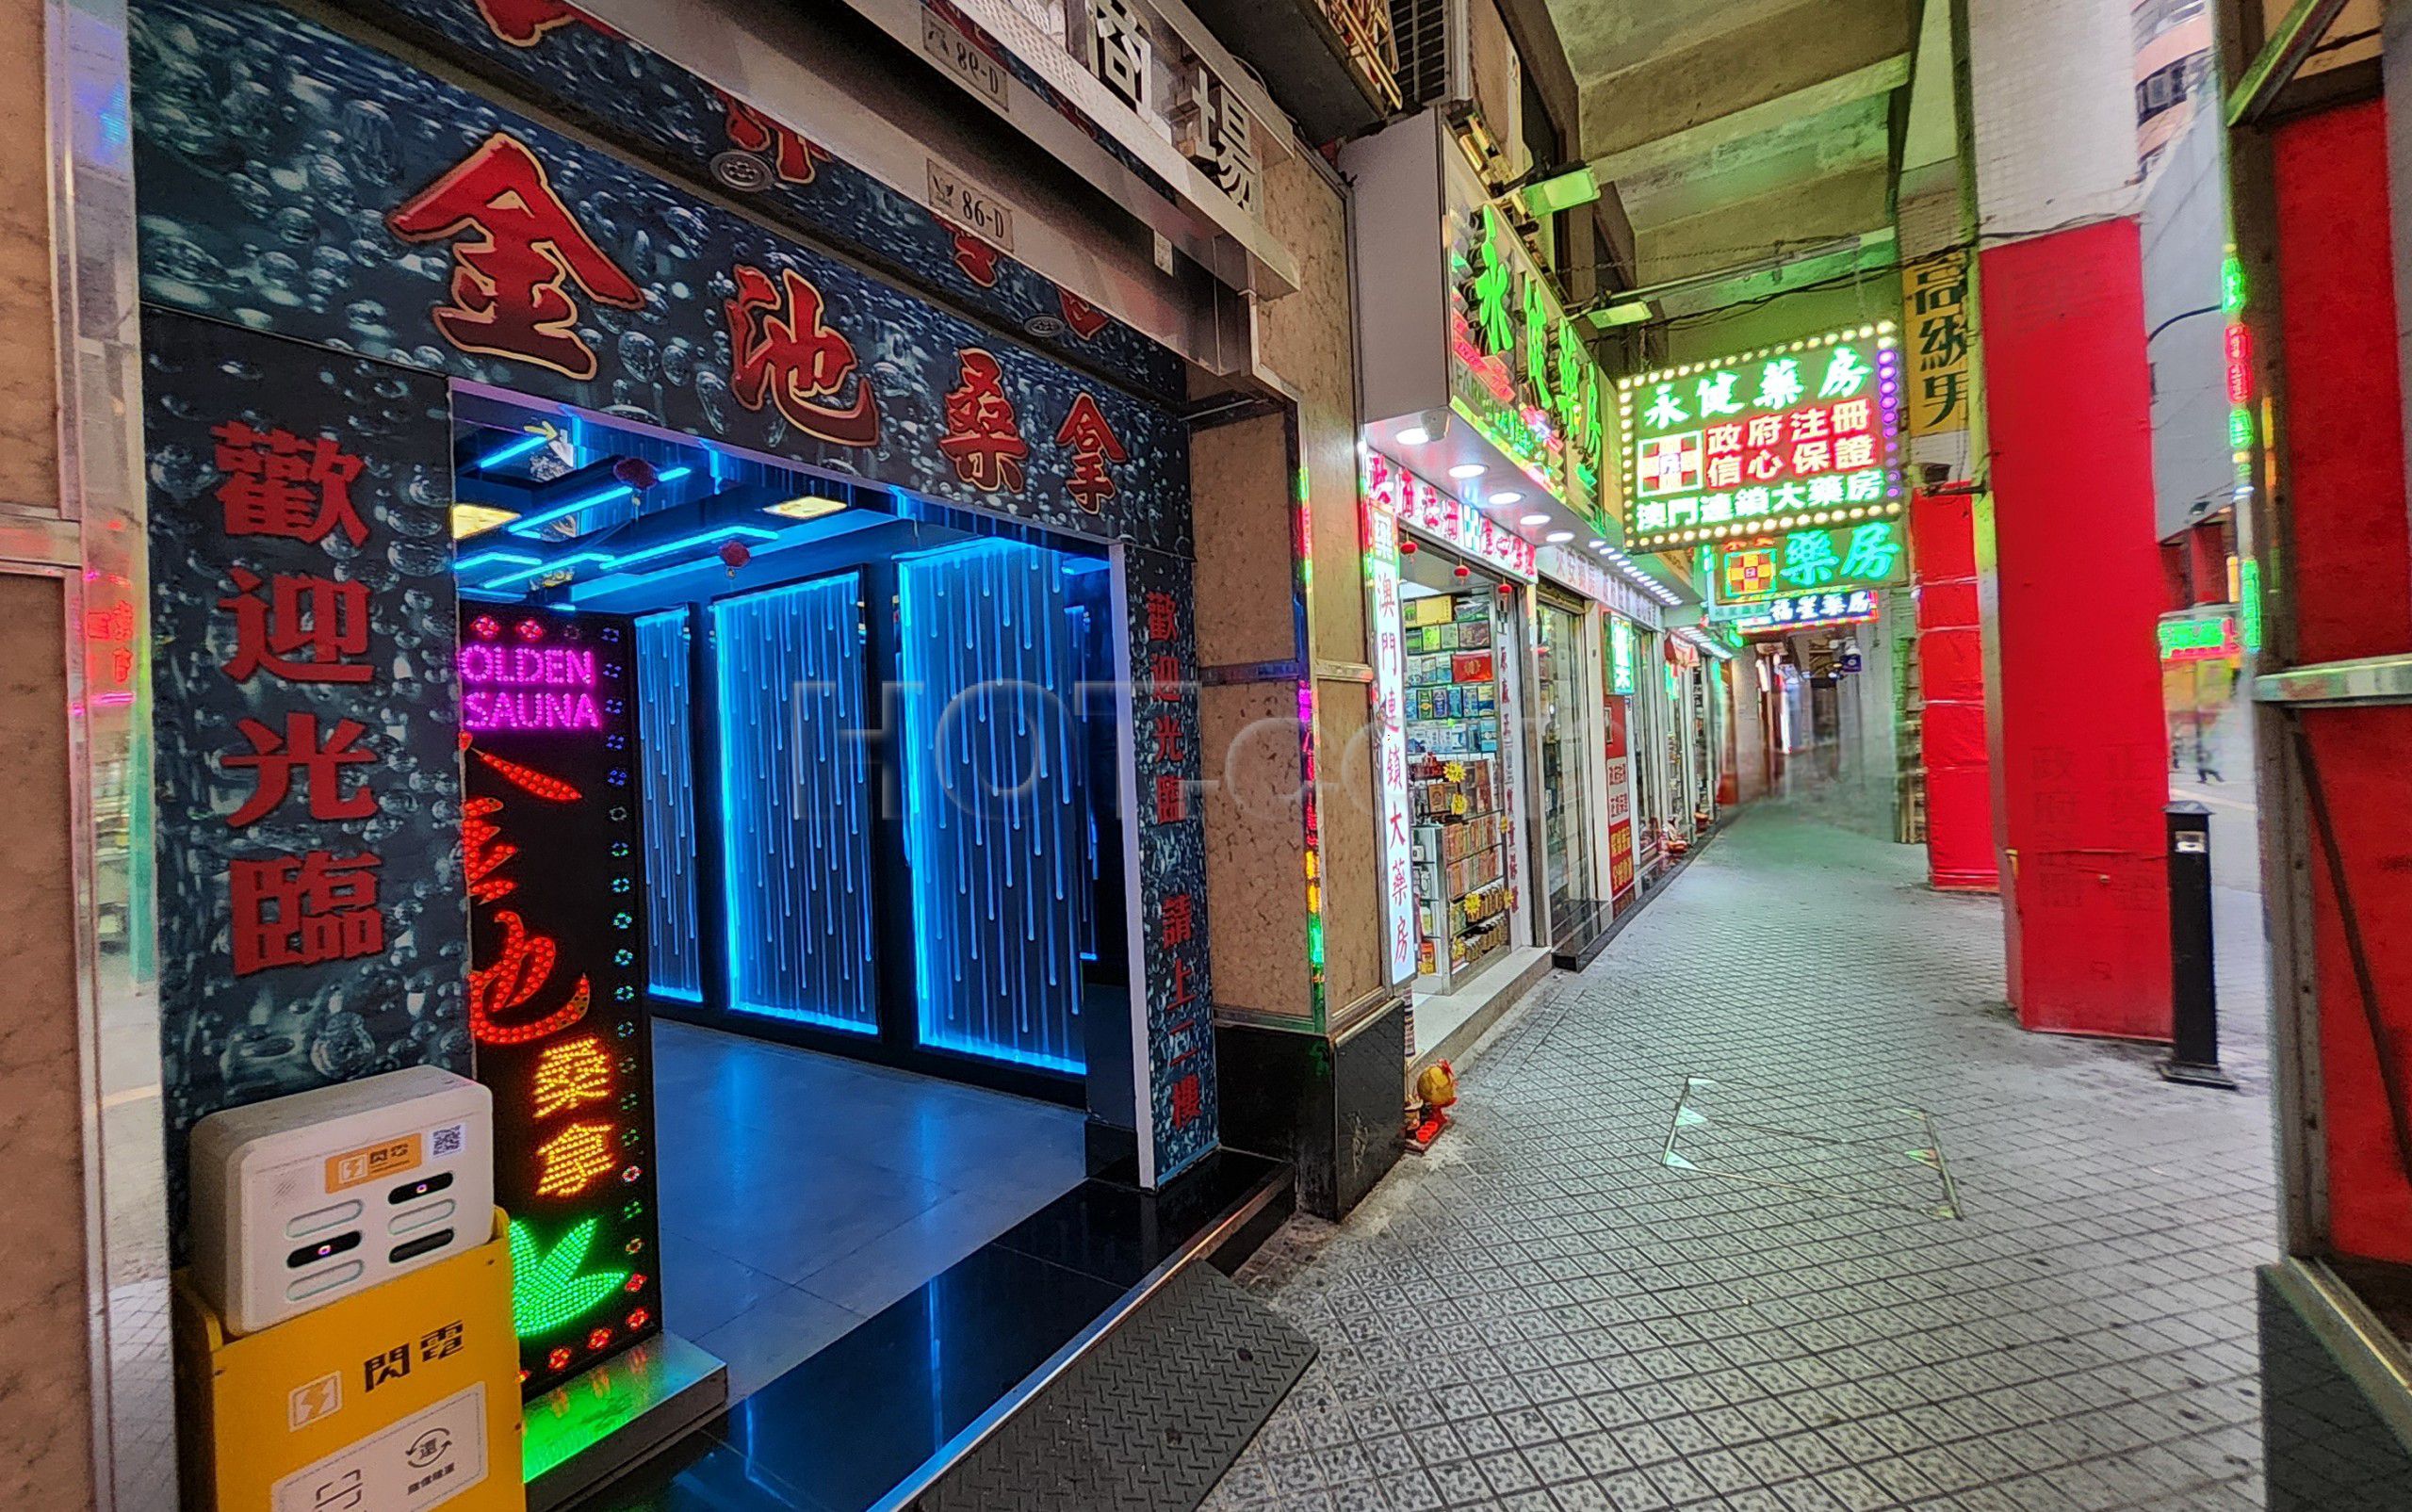 Macau, Macau Golden Sauna